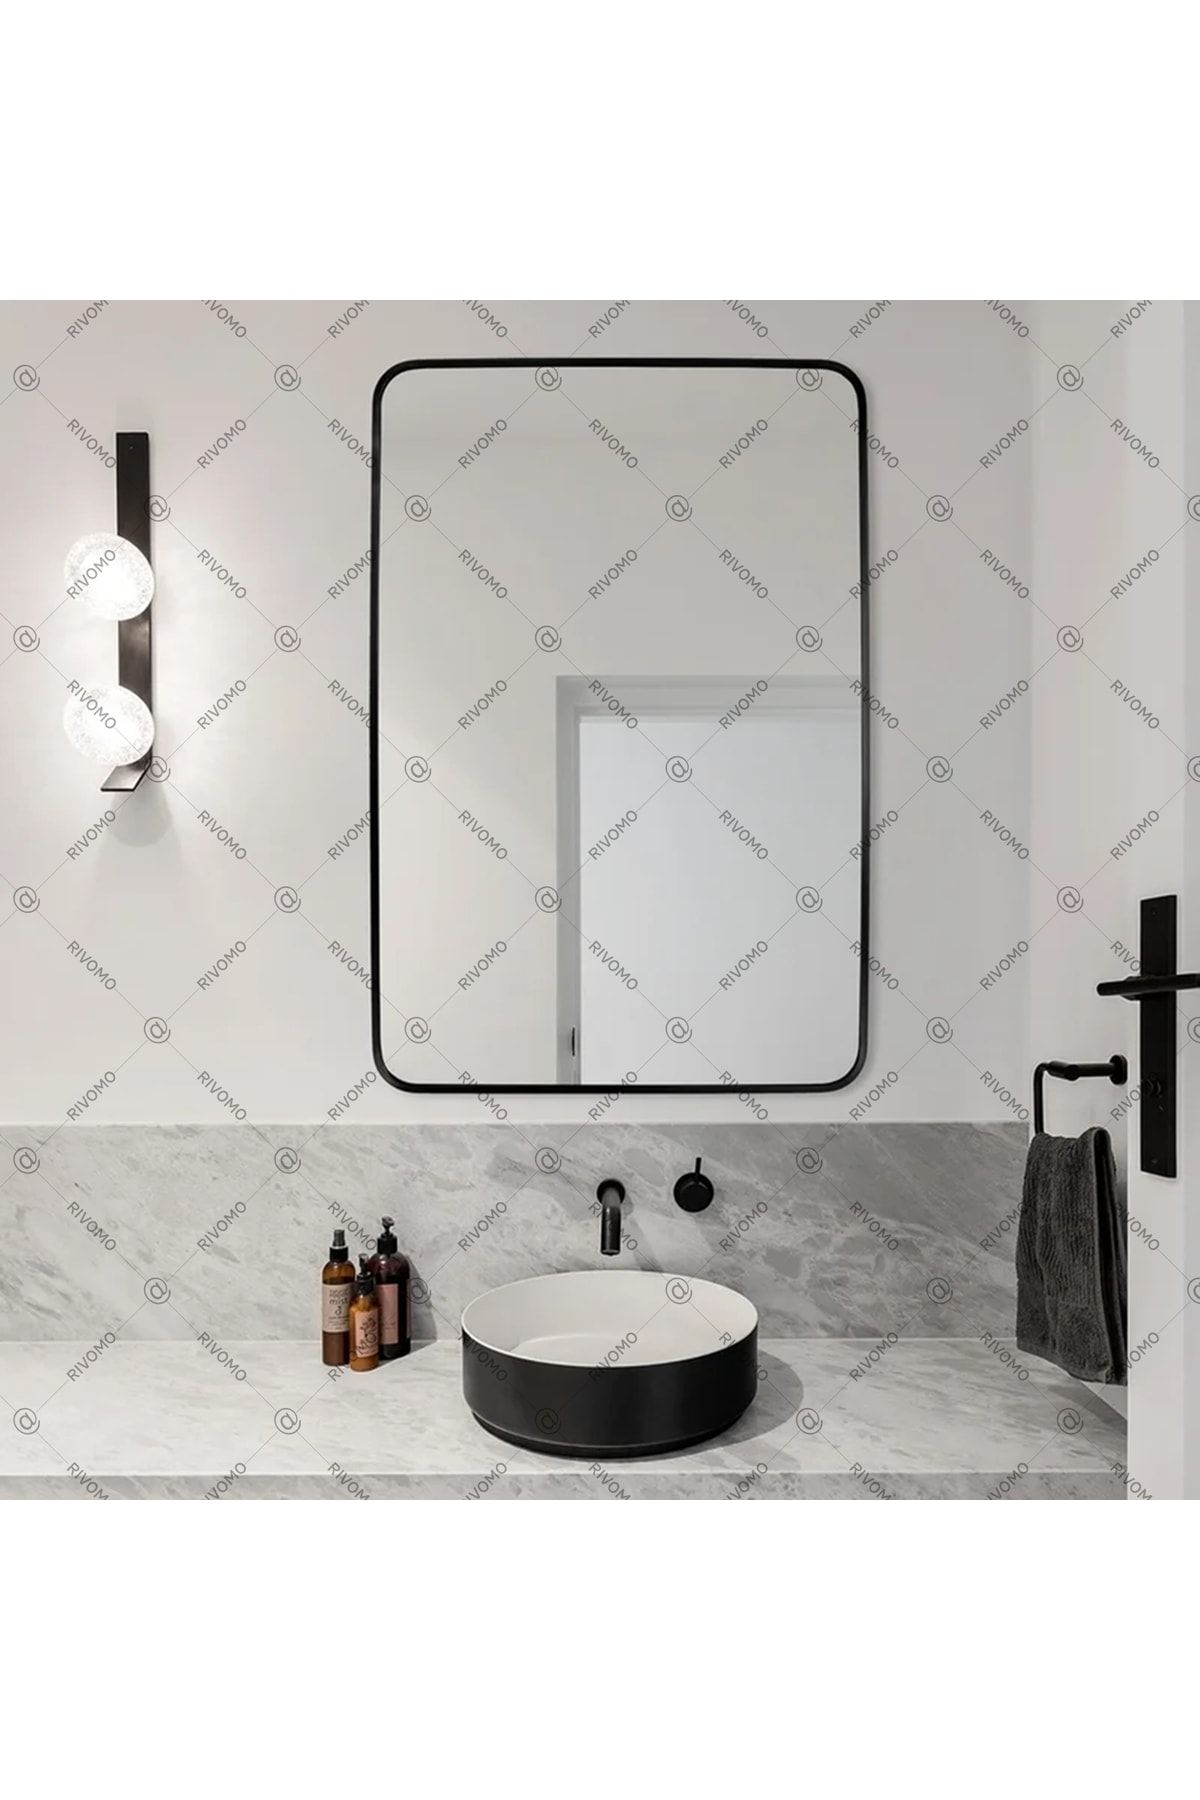 rivomo Siyah 65x45 Dekoratif Oval Banyo Aynası